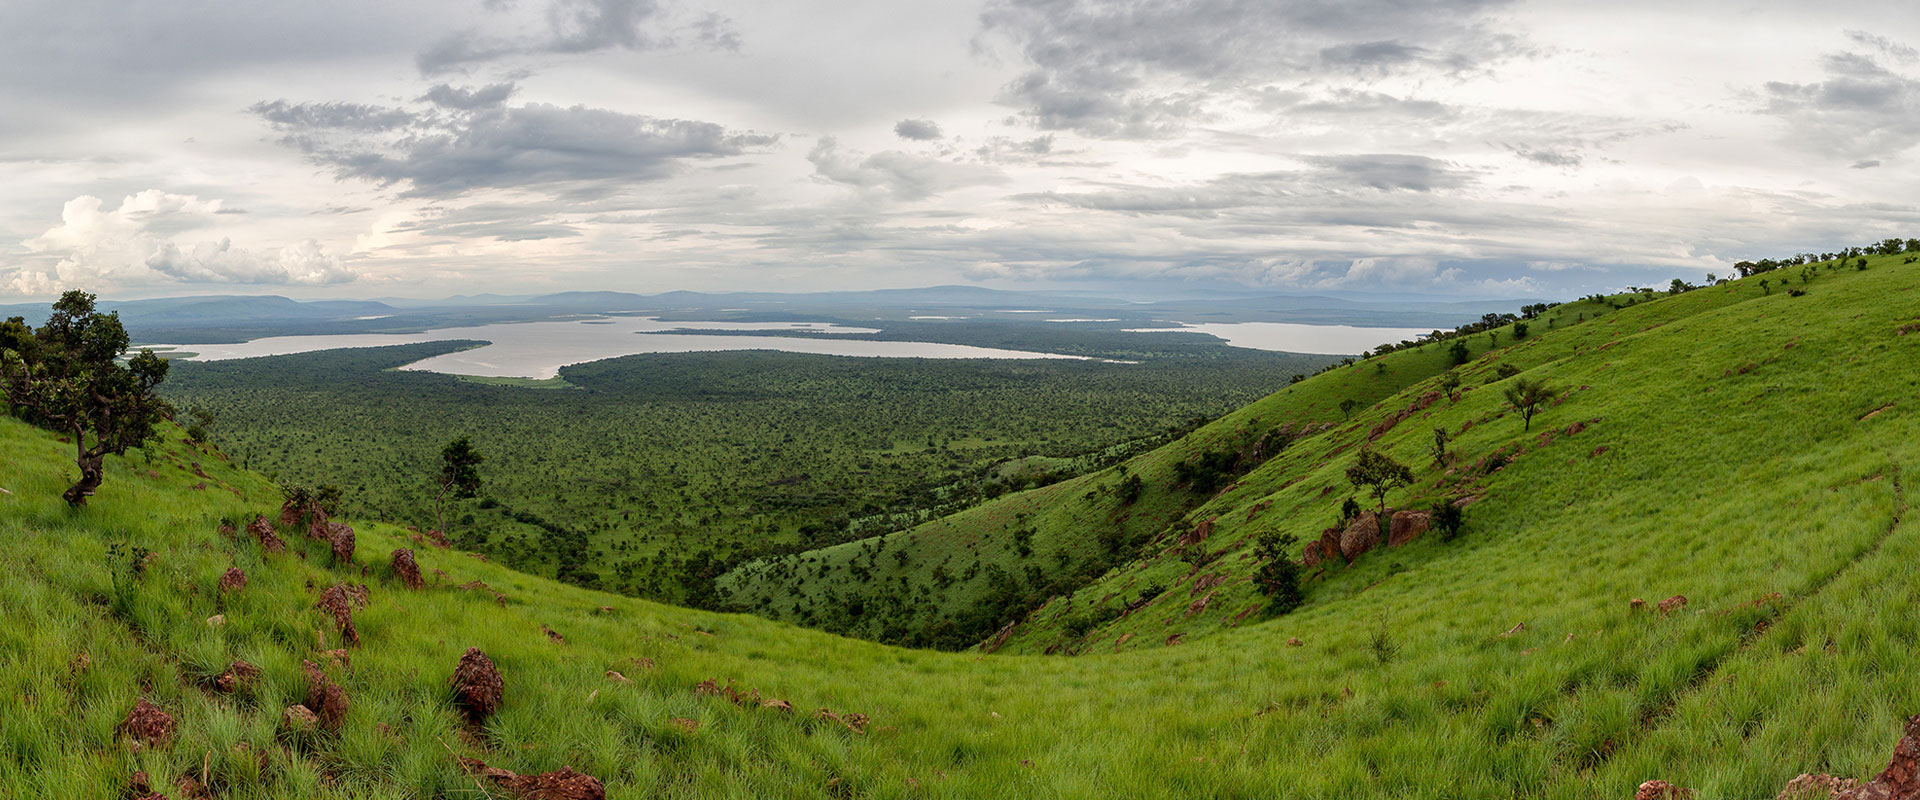 Rwanda National Parks